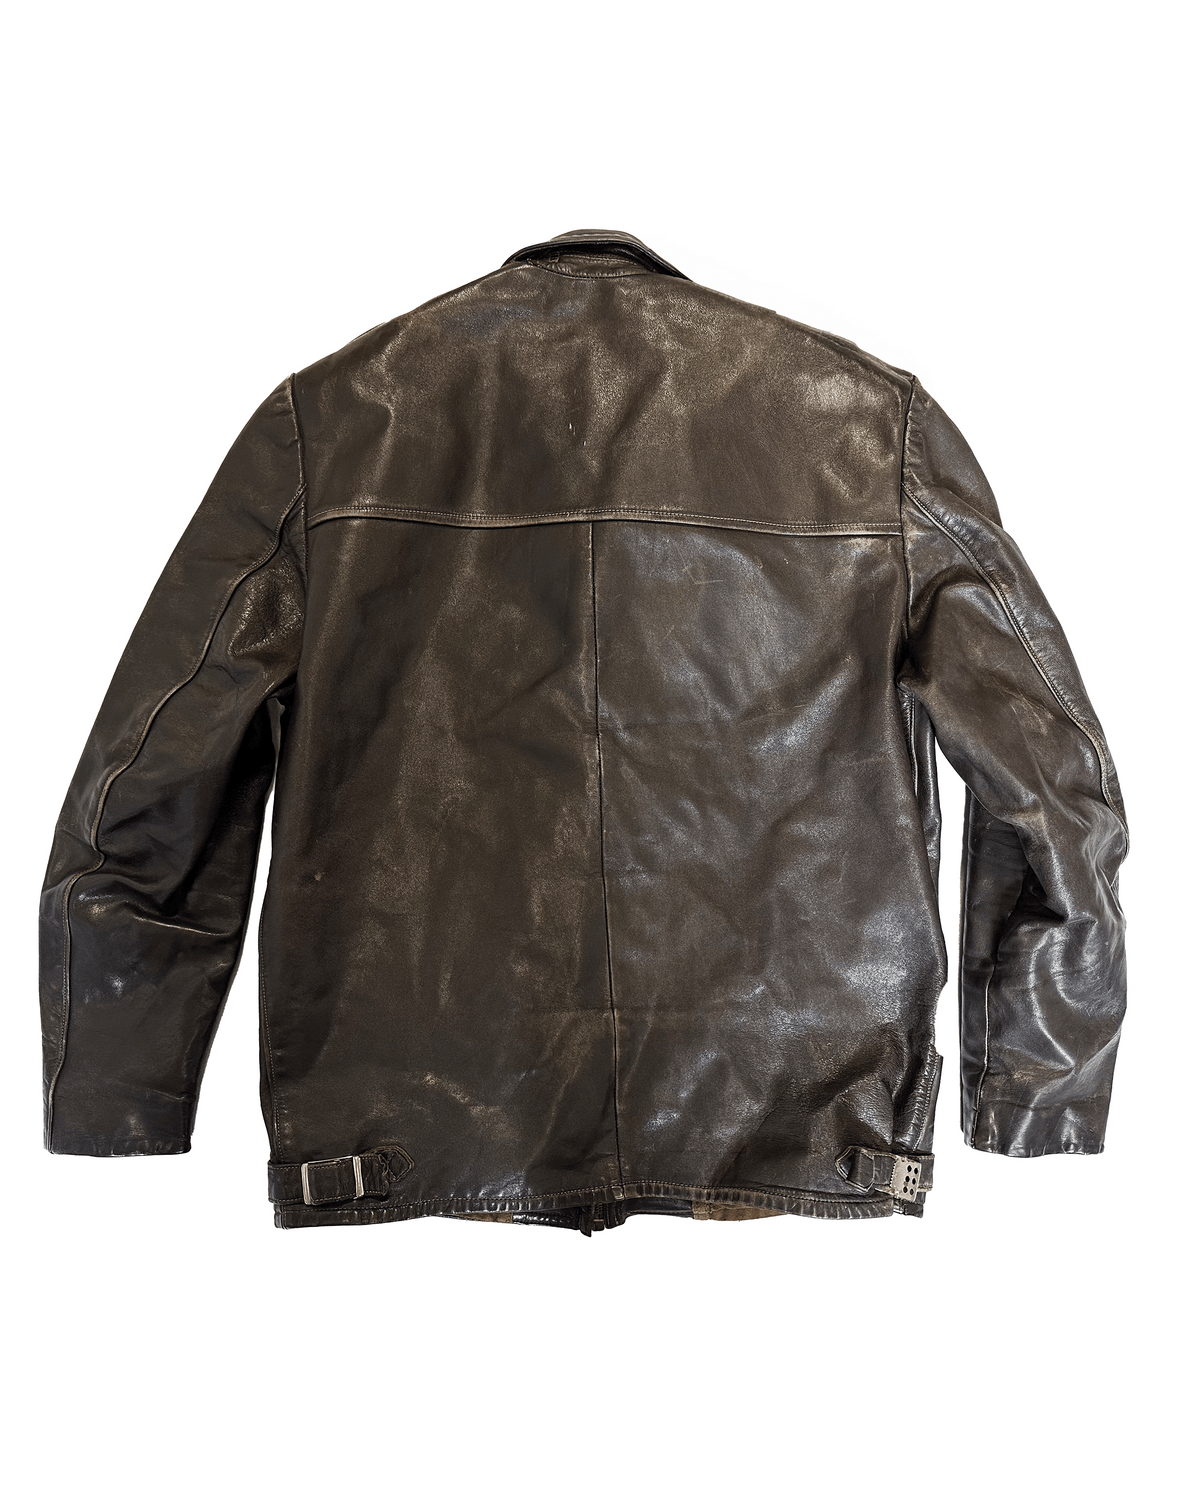 1940s French Motorcyle Jacket Size 46